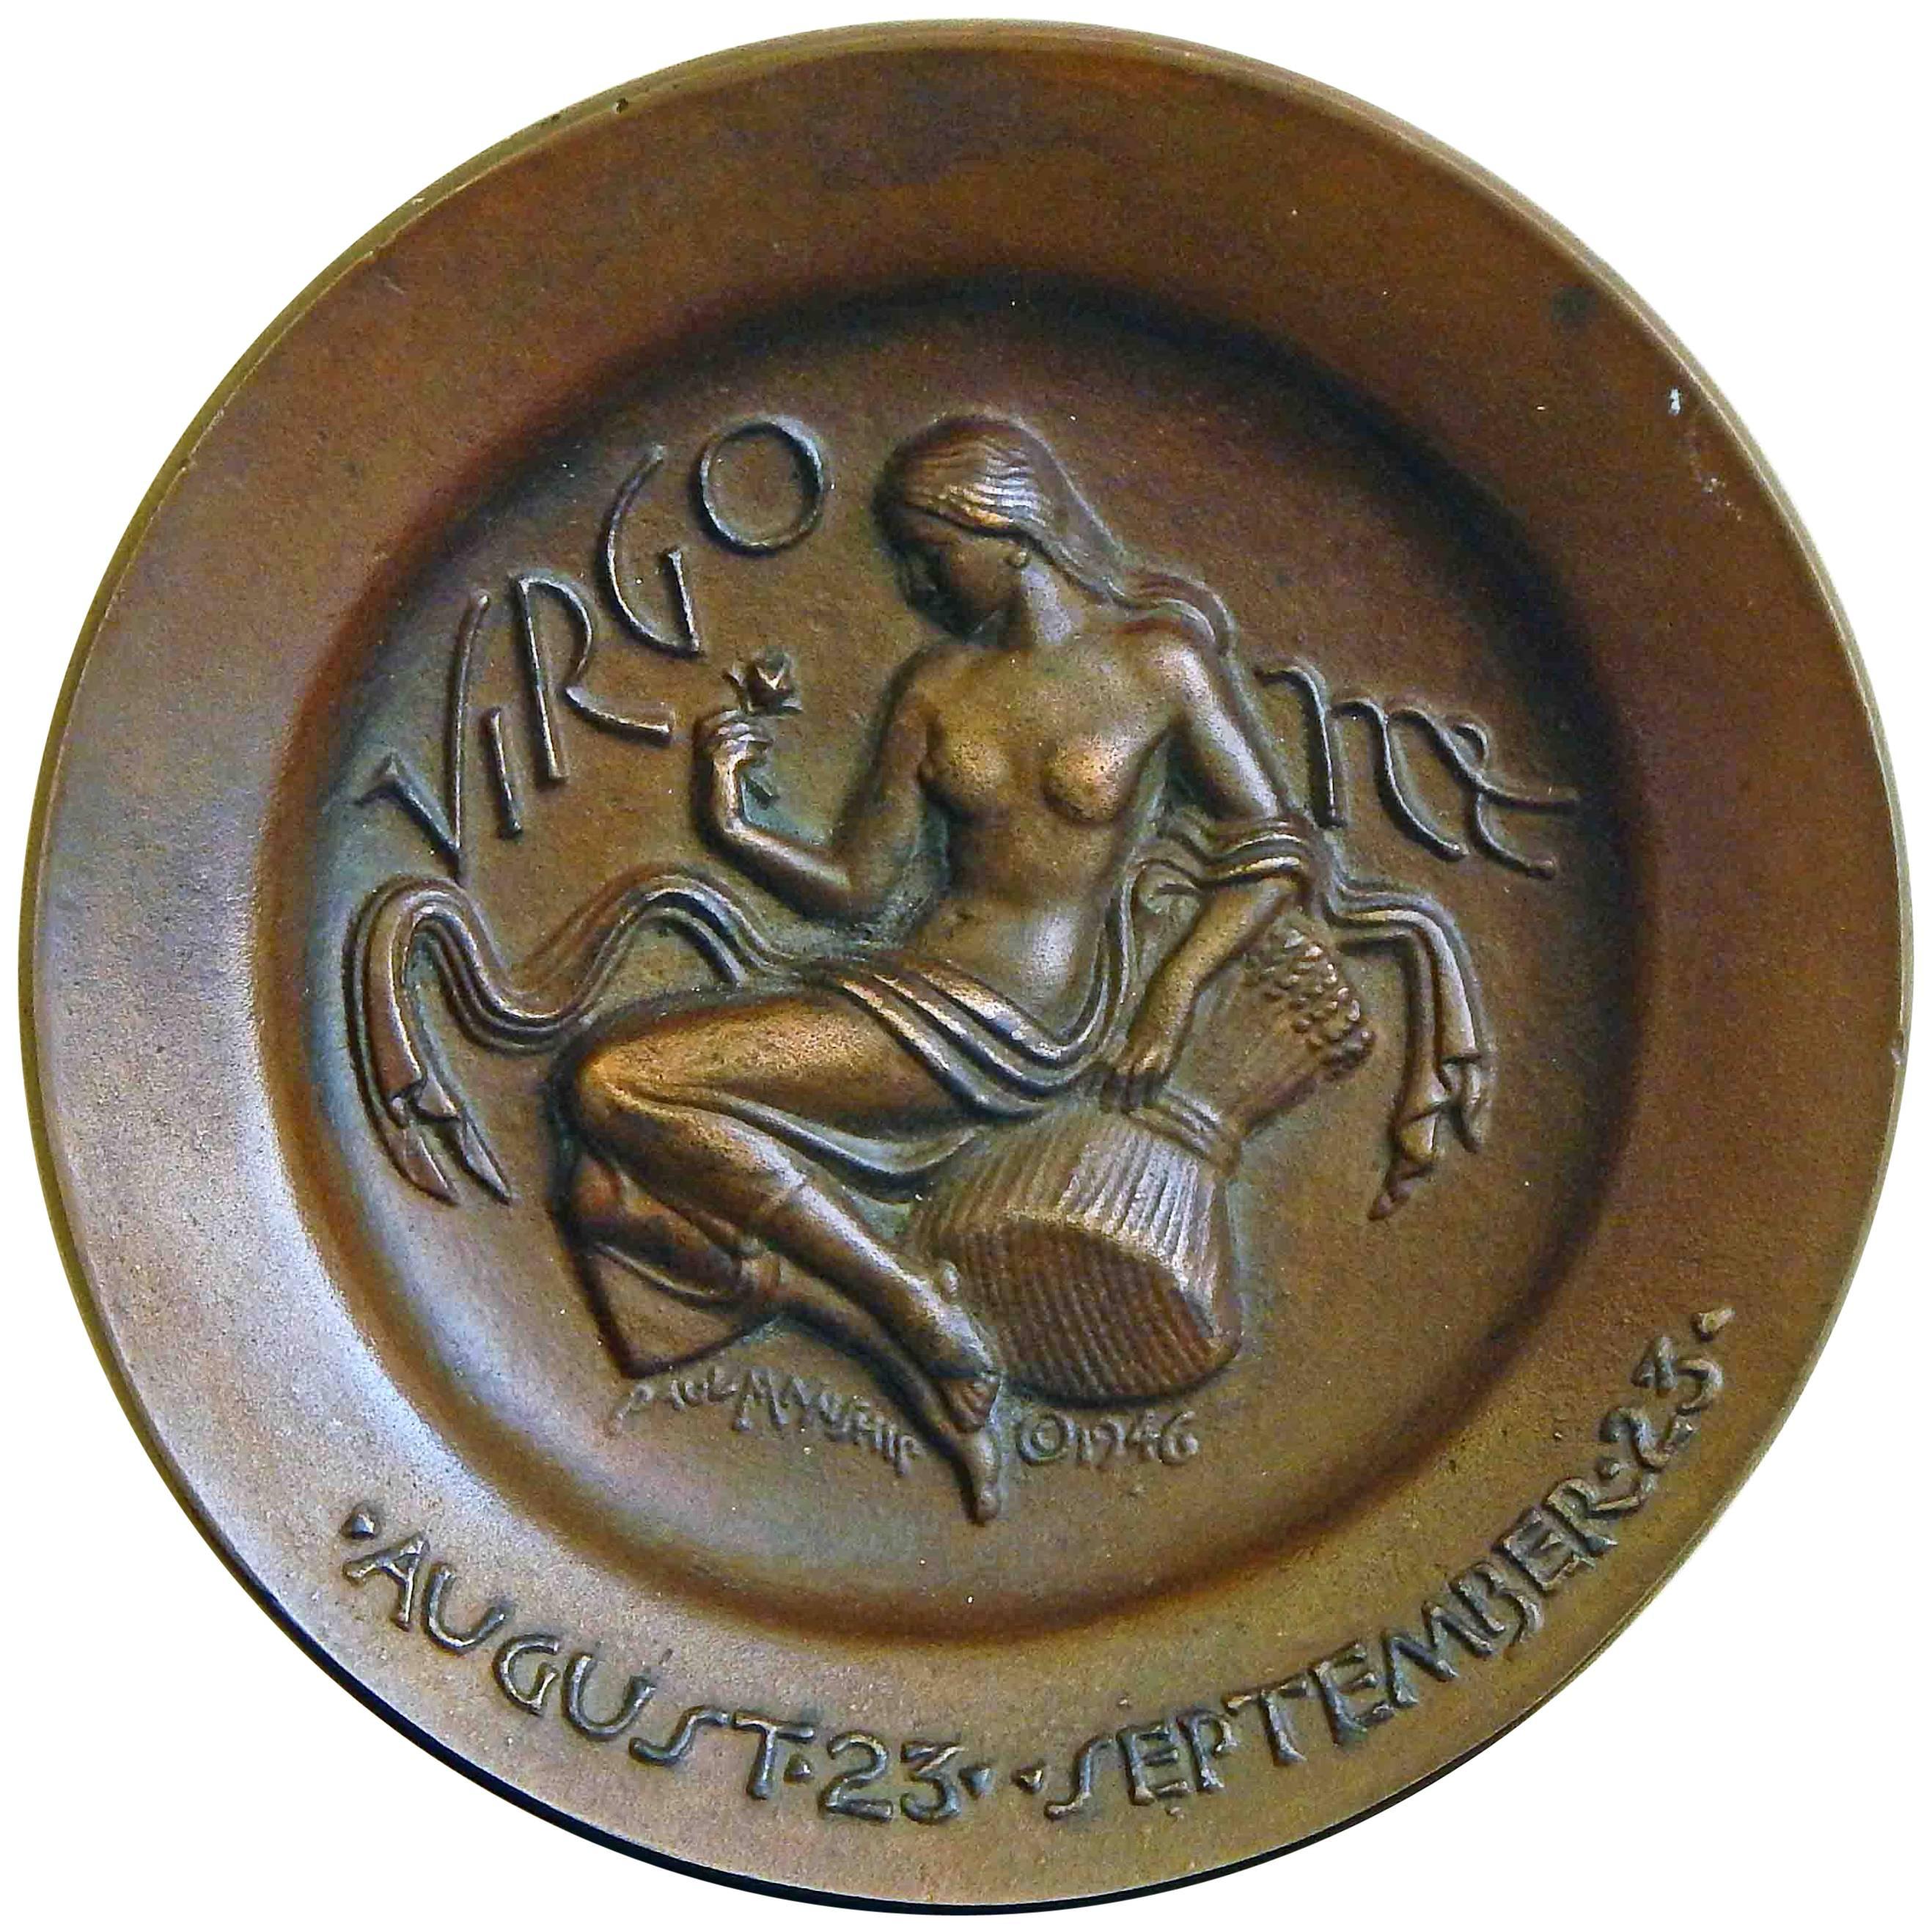 Seltenes „Virgo“-Basrelief aus Bronze im hochmodernen Art déco-Stil von Paul Manship